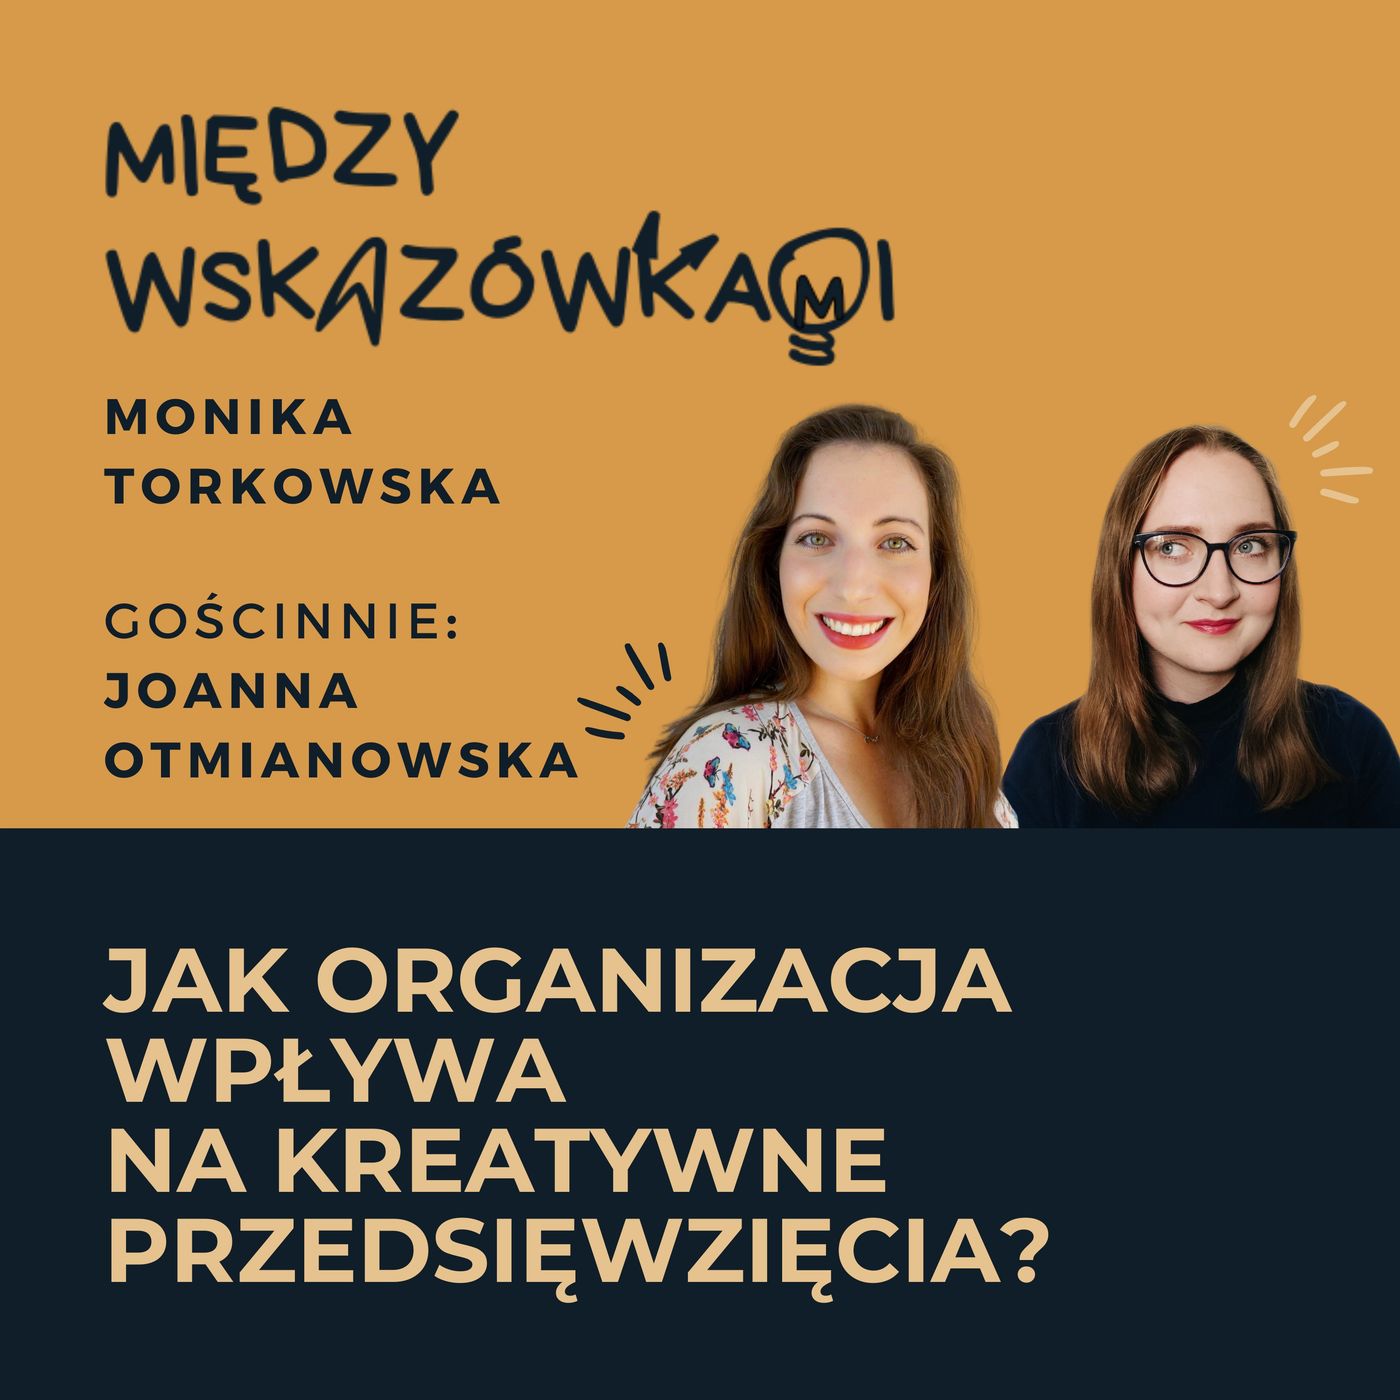 080: Czy organizacja niszczy kreatywność i odbiera radość z życia? | Joanna Otmianowska